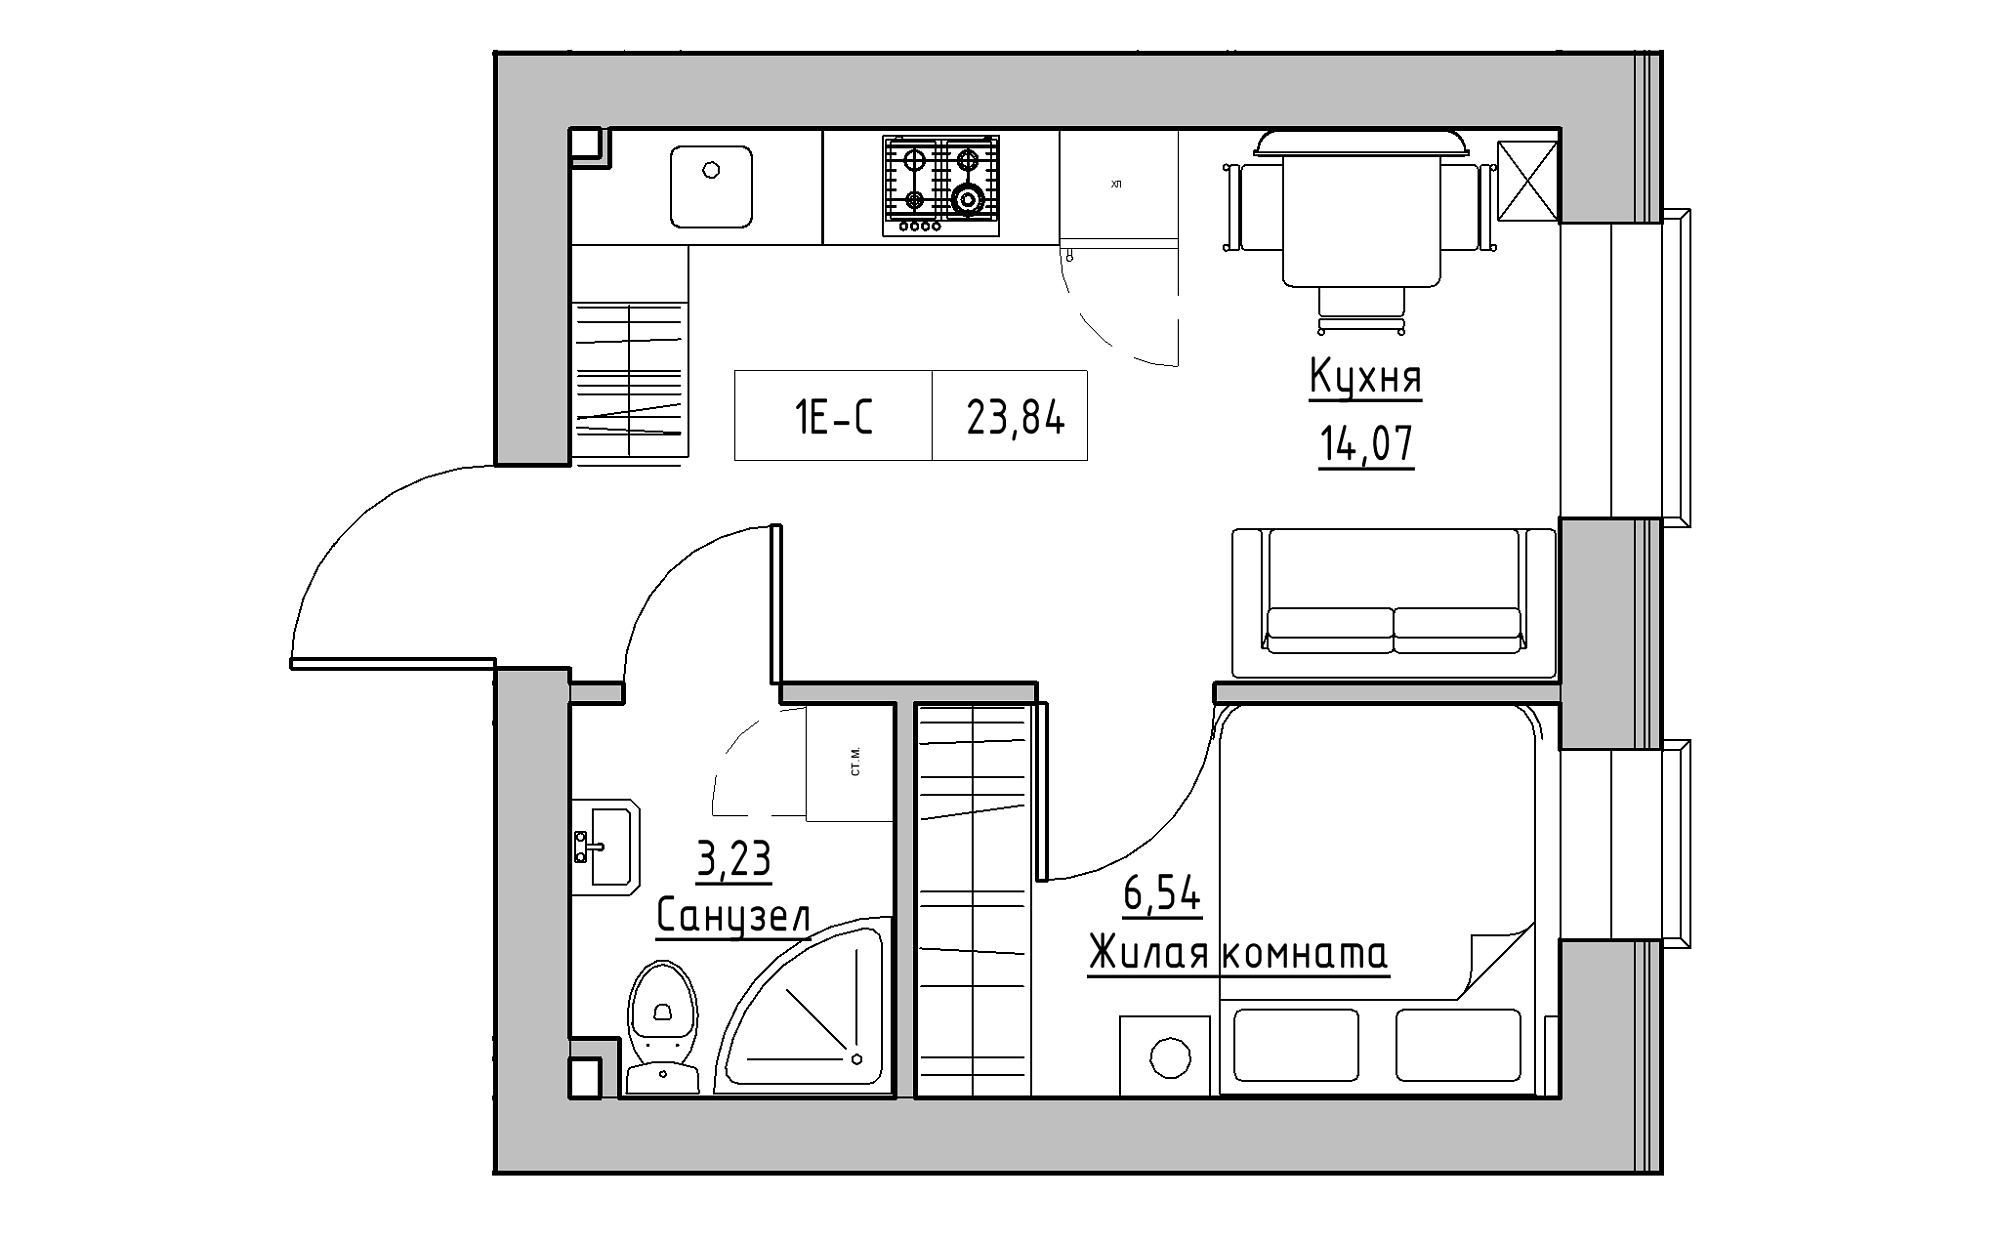 Планировка 1-к квартира площей 23.84м2, KS-022-02/0011.